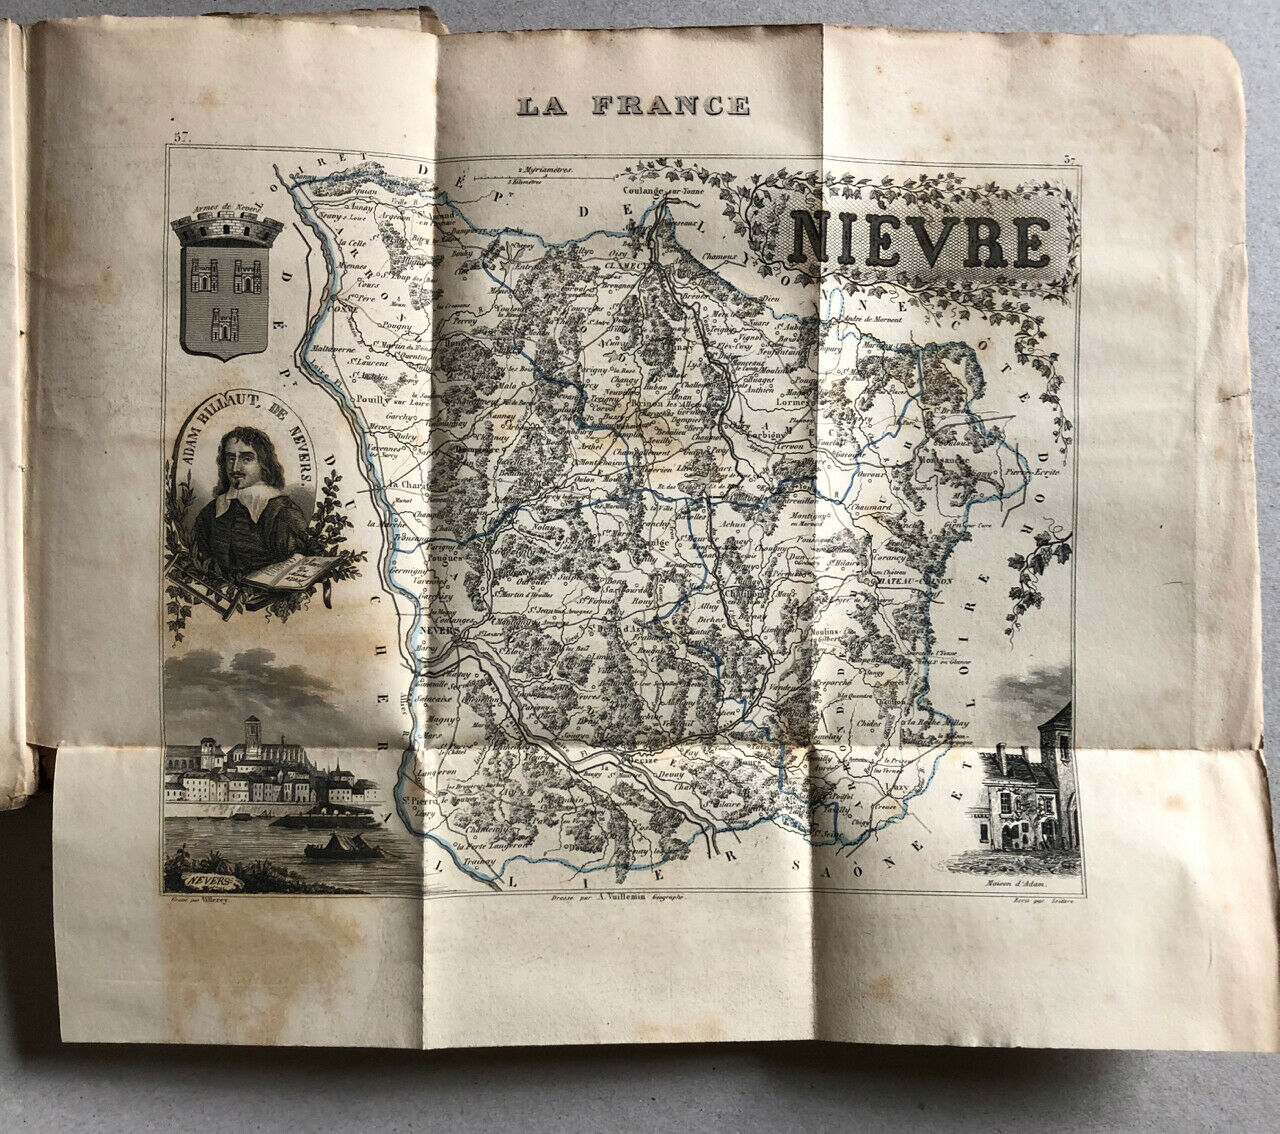 Géographie départementale France — La Nièvre — carte dépliante — Dubochet — 1847